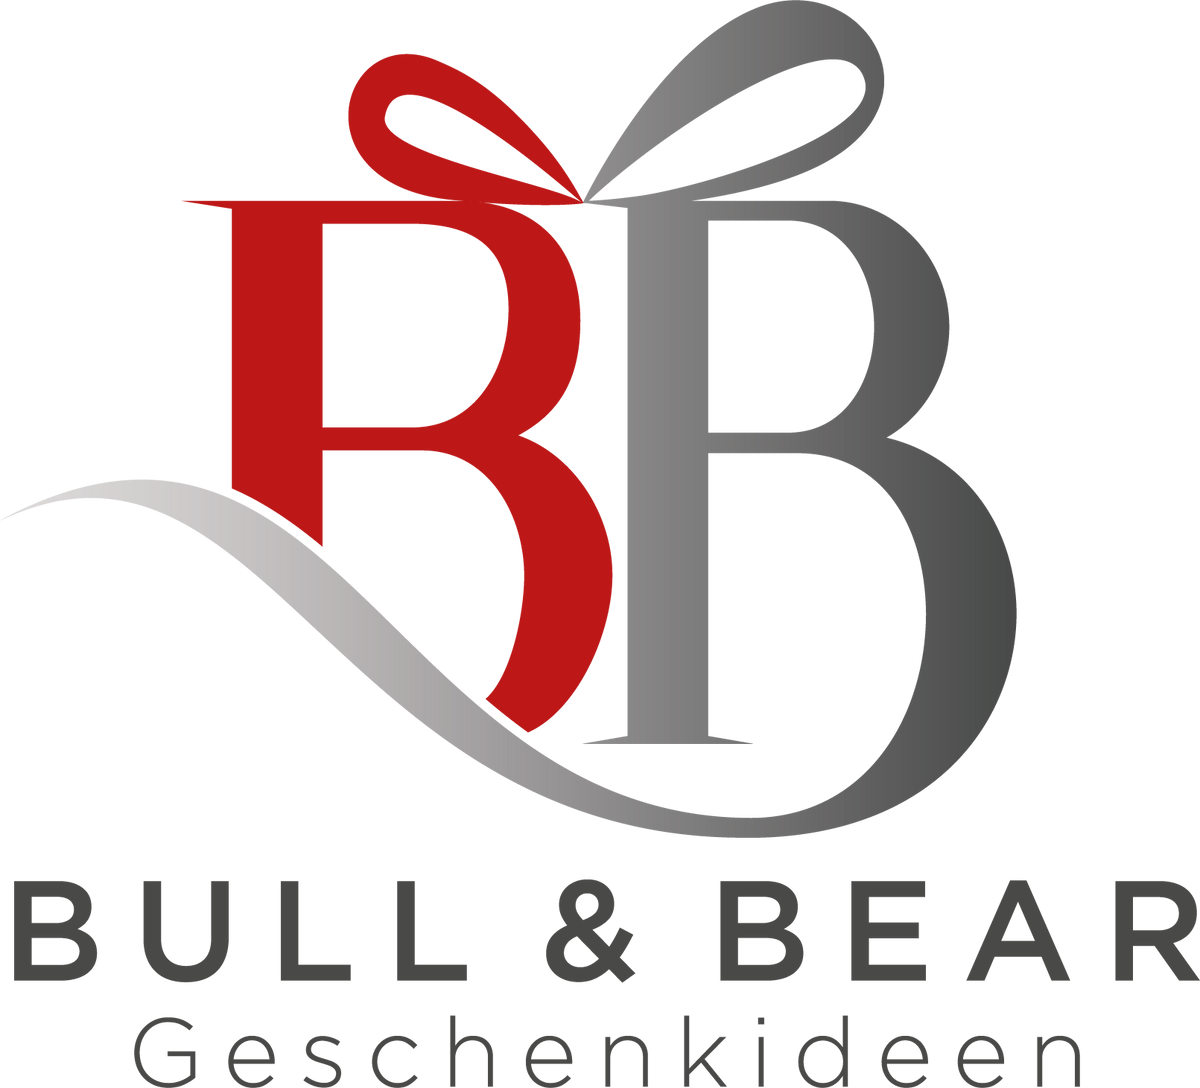 BULL & BEAR | Geschenke & Gadgets